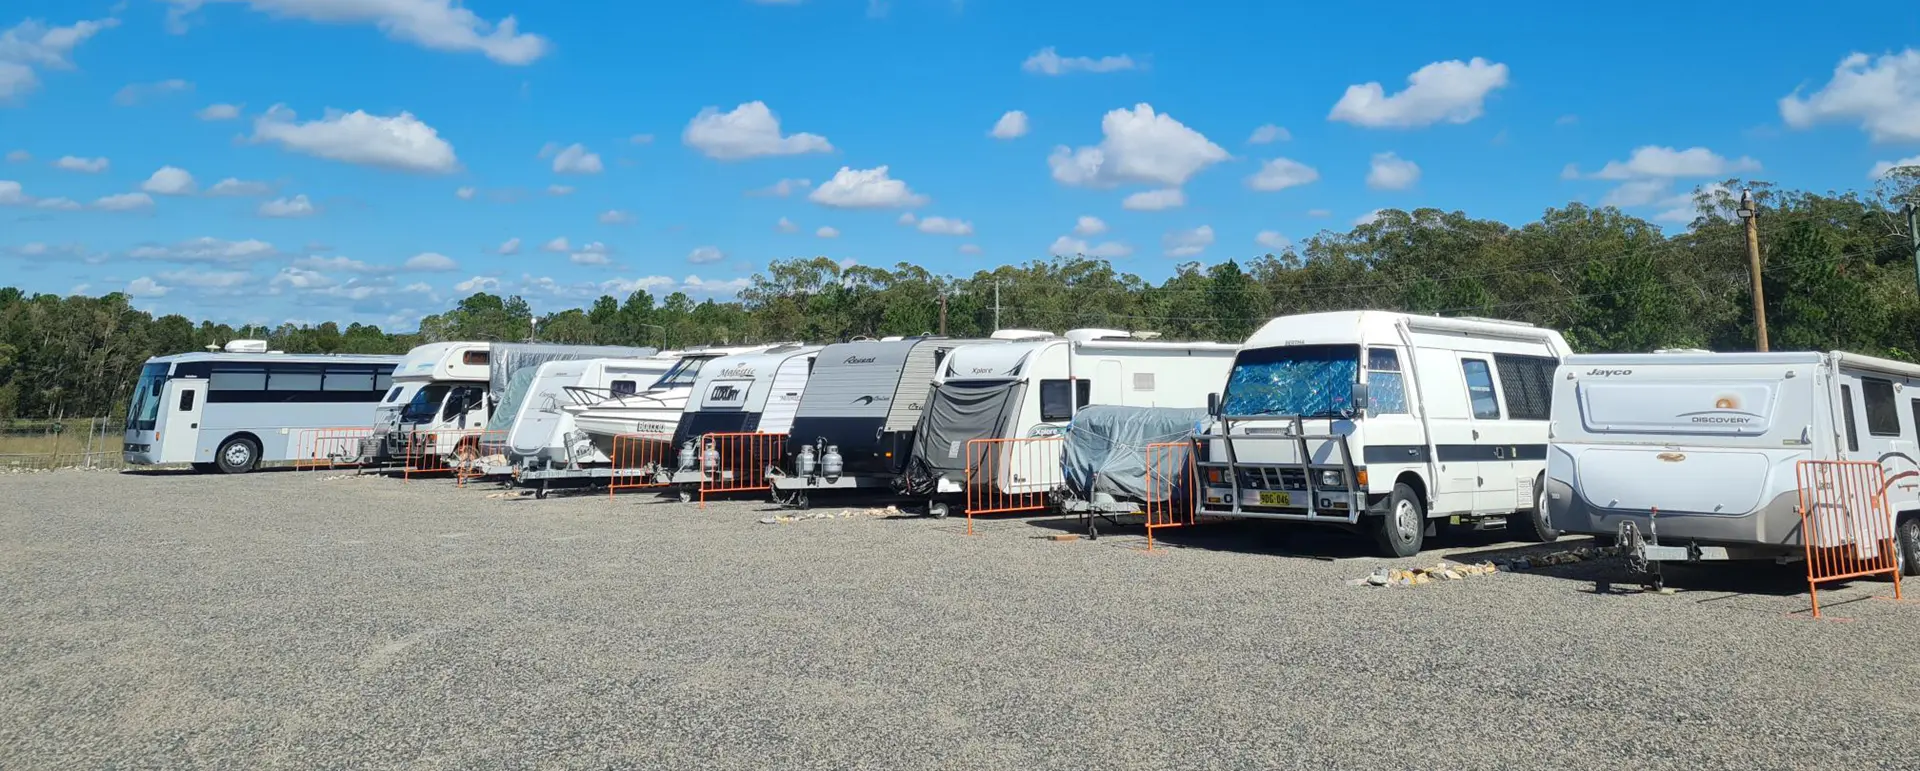 A row of caravans on a sunny day